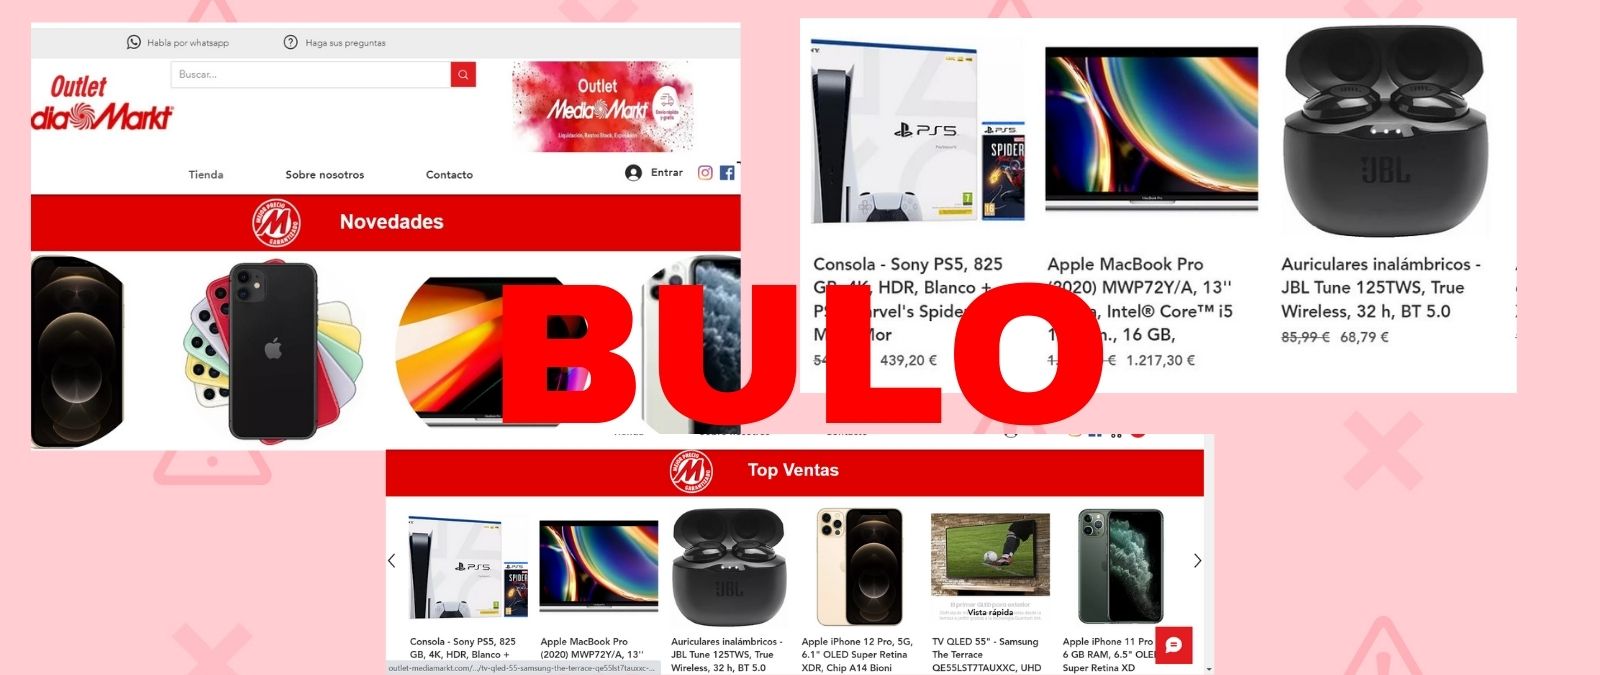 Mediamarkt no te vende un patinete Xiaomi por 1,99 euros: Es una estafa por  Facebook - Meristation